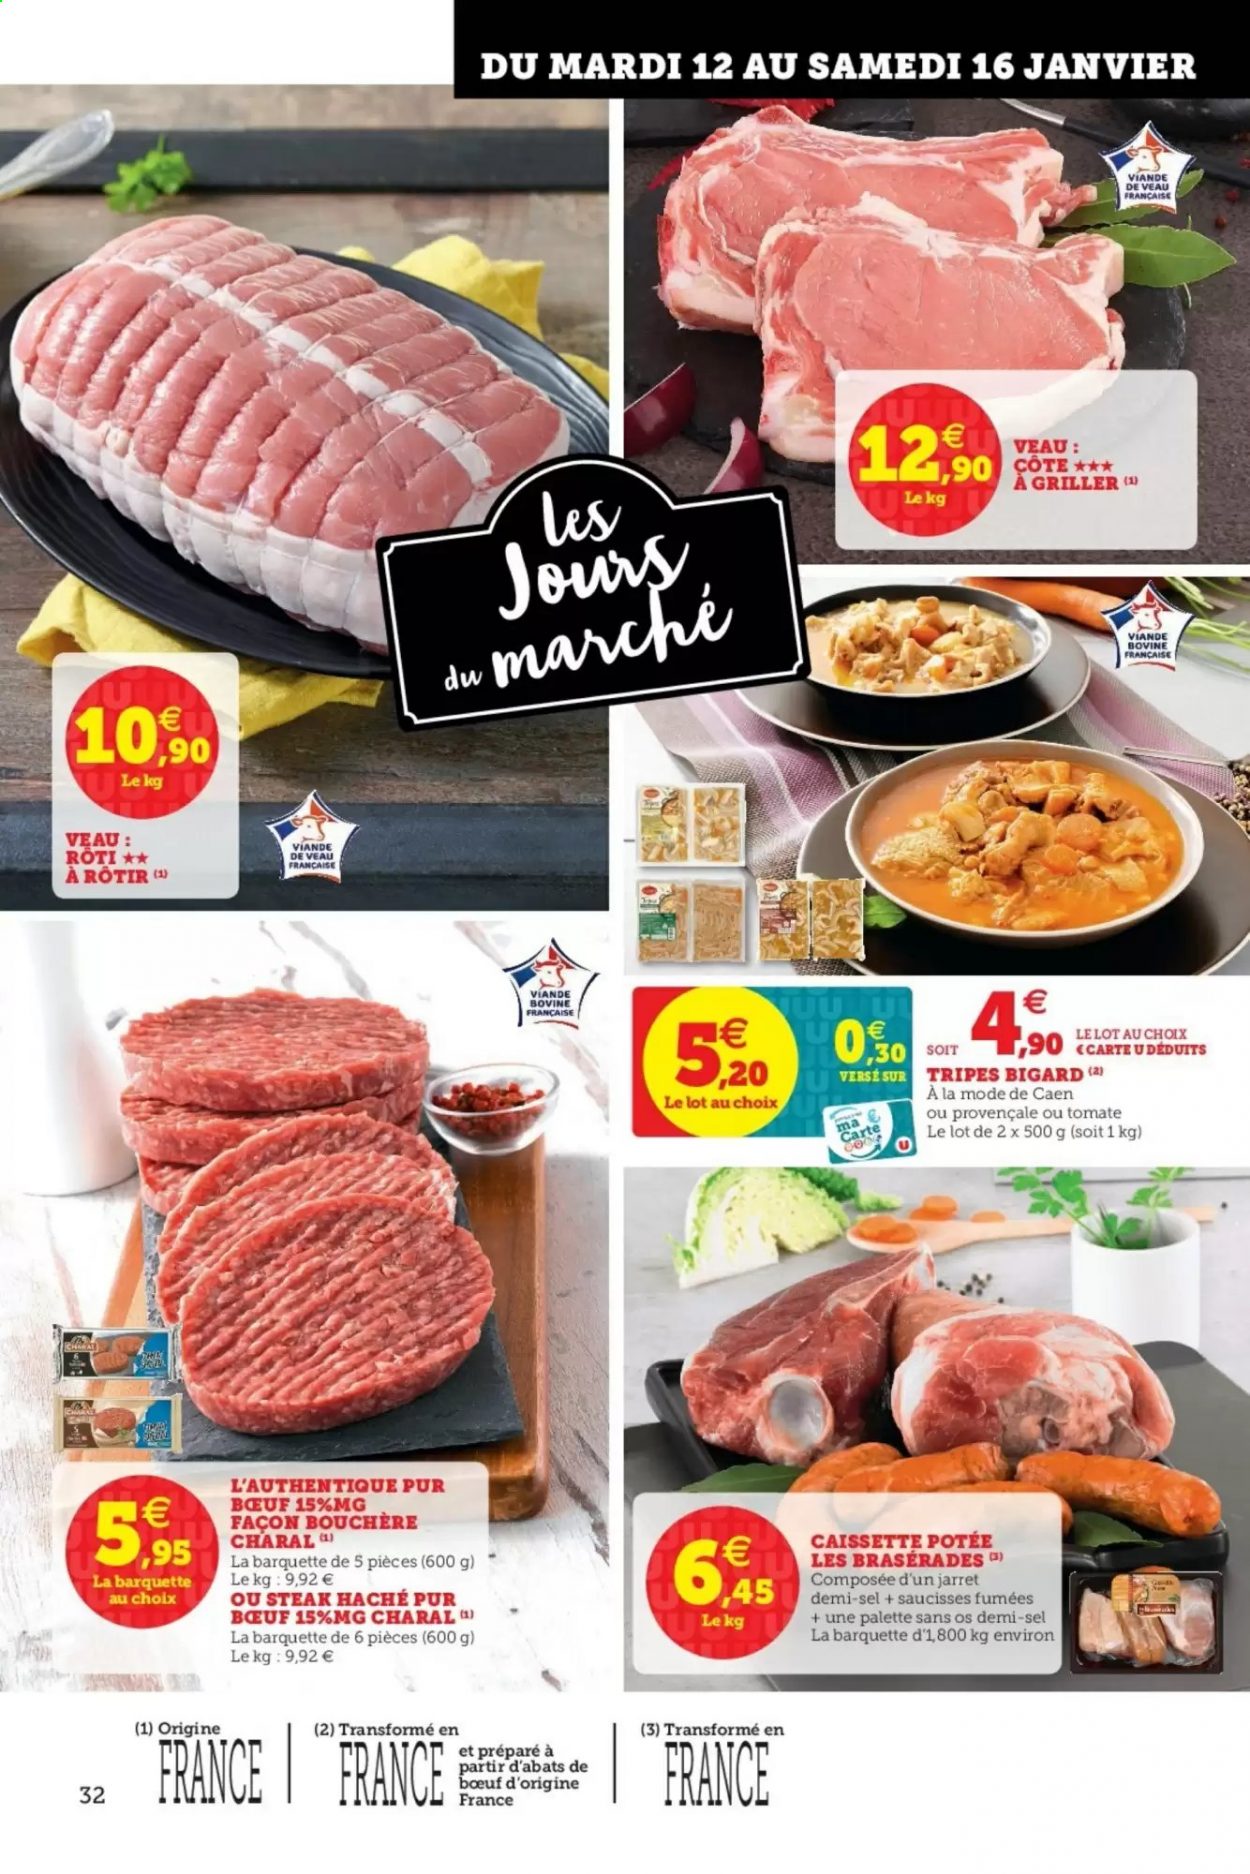 thumbnail - Catalogue HYPER U - 12/01/2021 - 23/01/2021 - Produits soldés - viande de veau, steak haché, viande hachée, saucisse, Palette. Page 32.